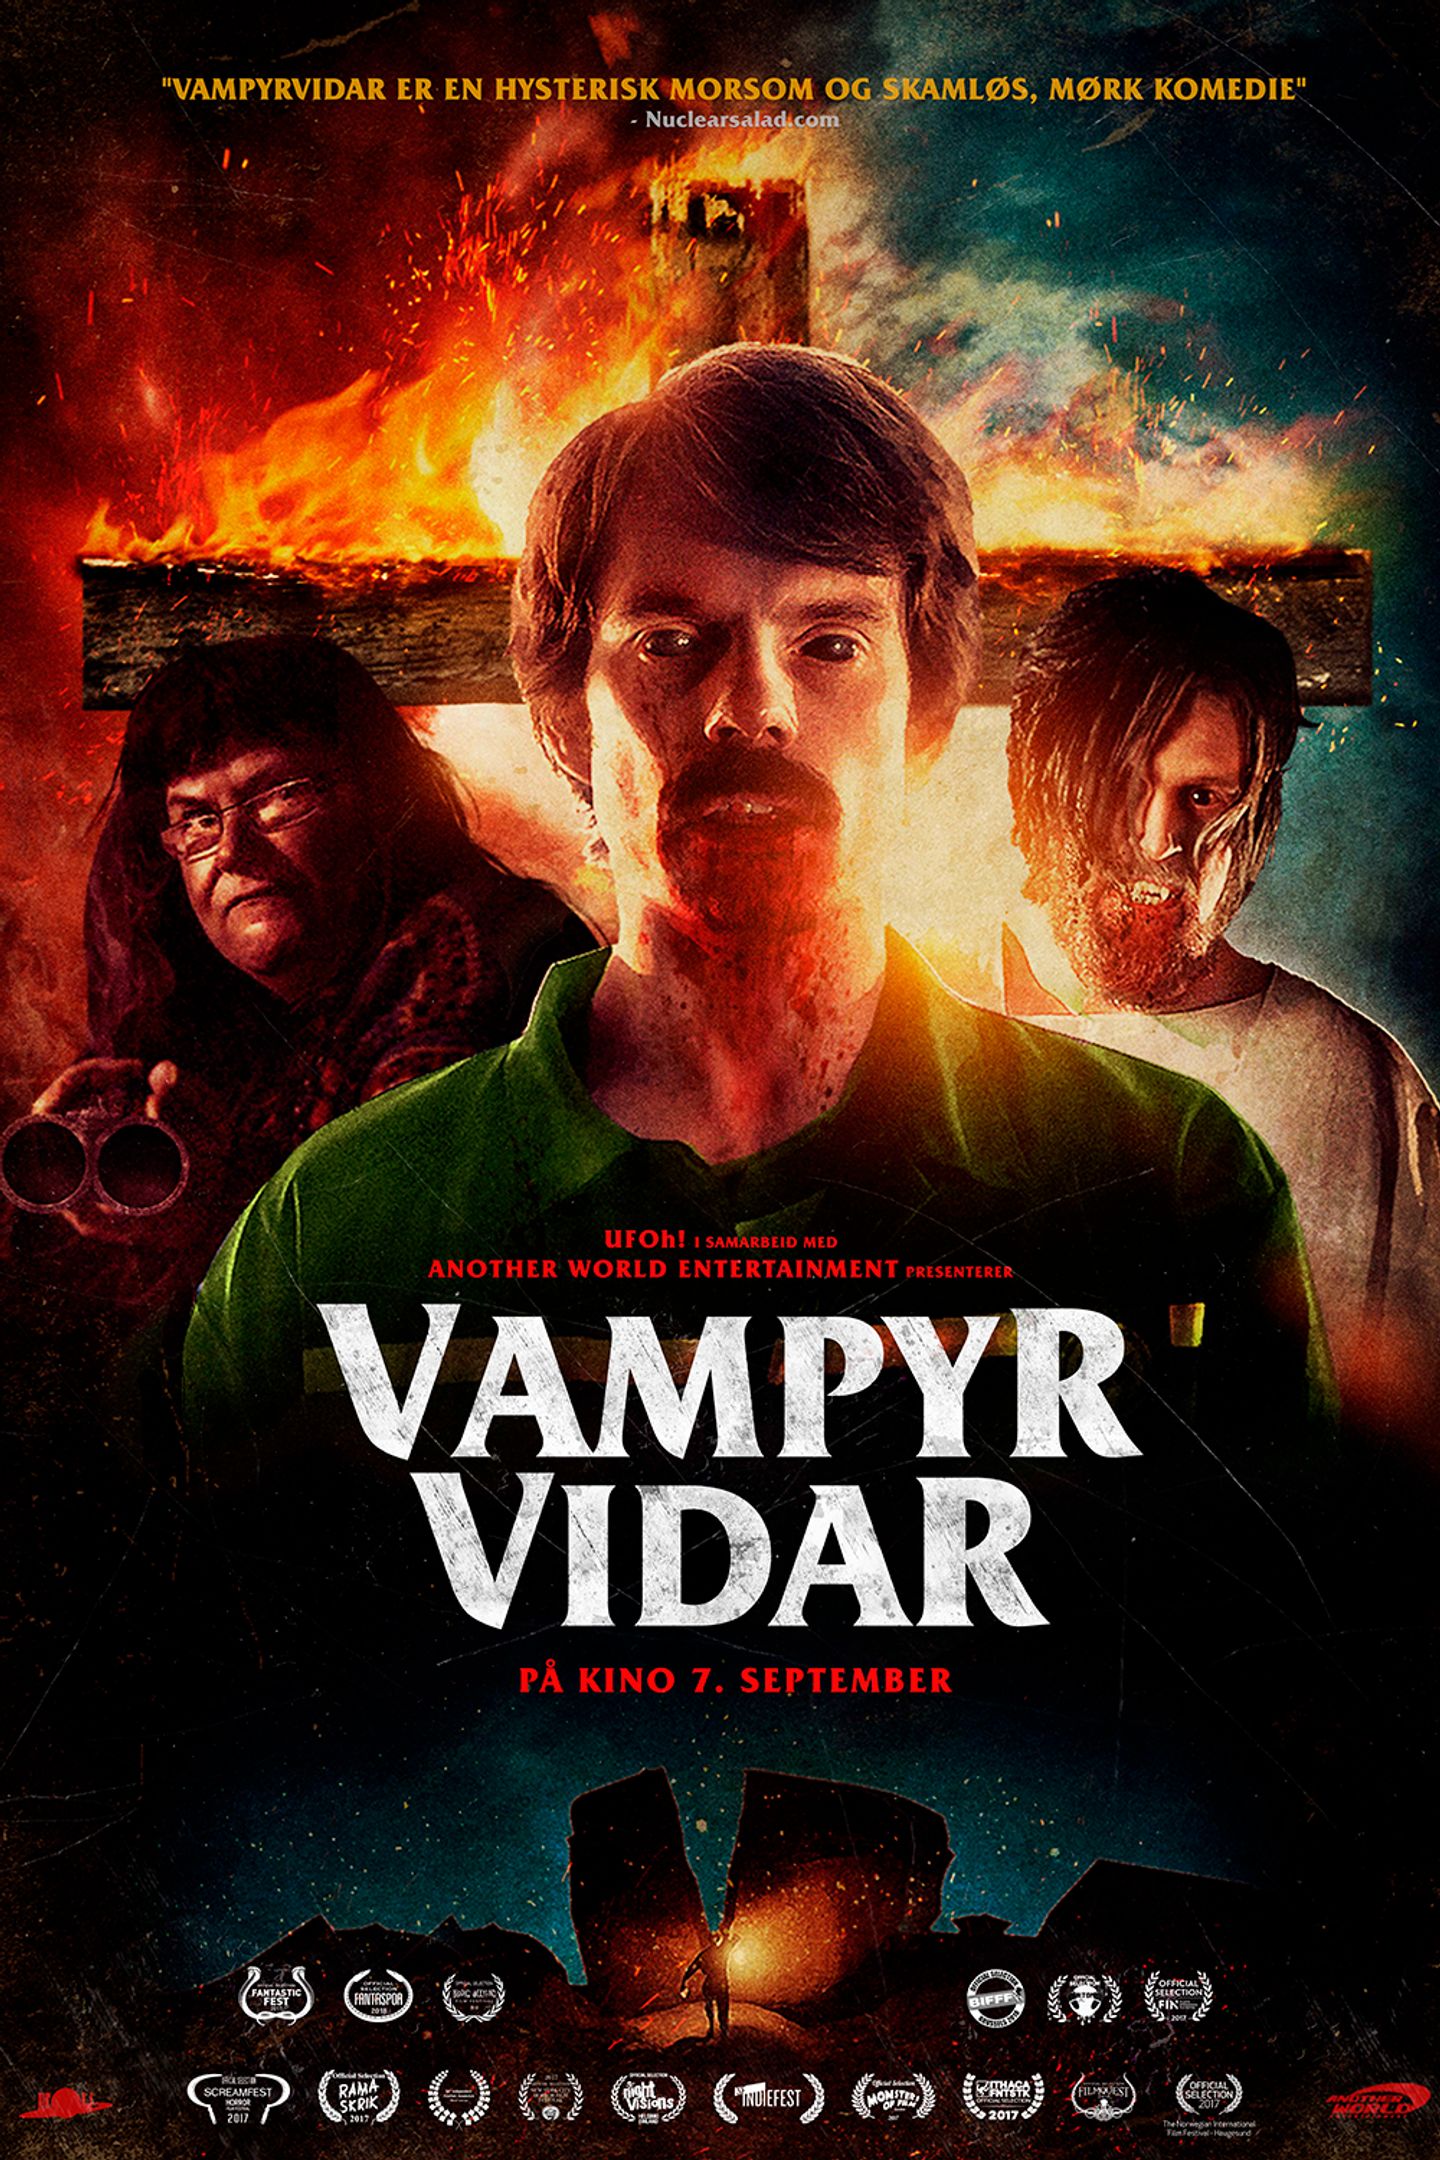 Plakat for 'VampyrVidar'